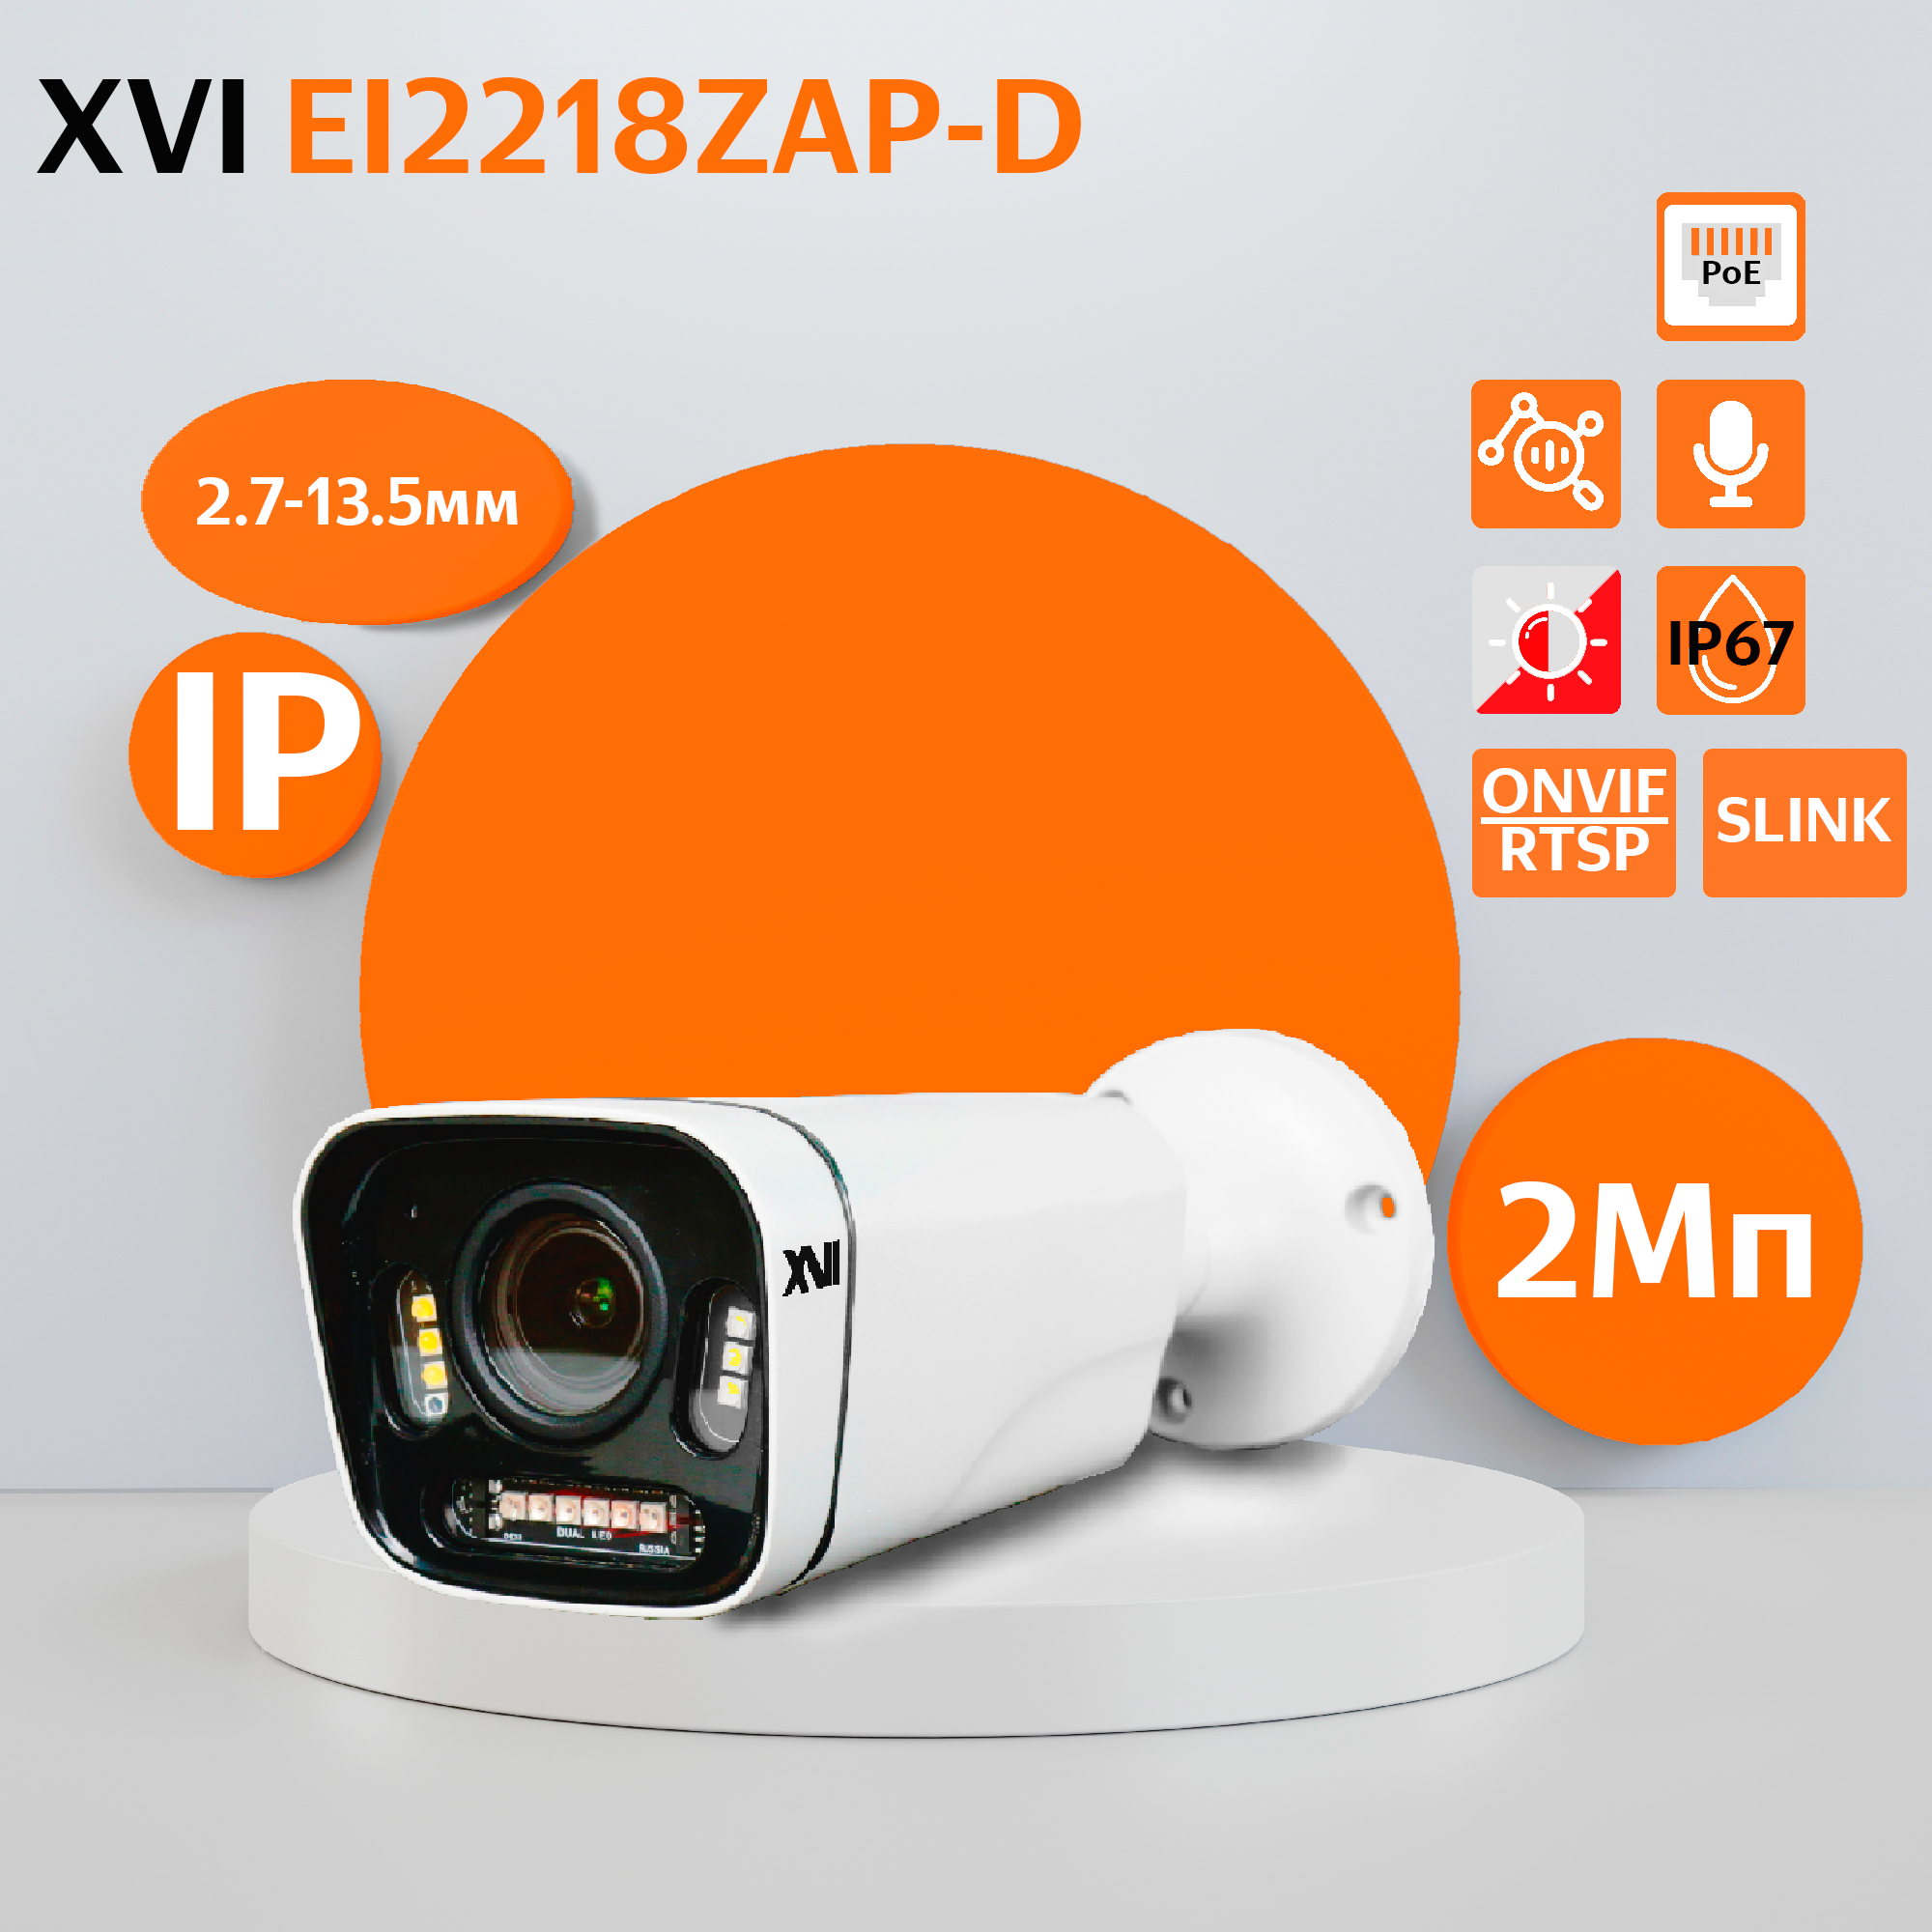 Уличная IP камера XVI EI2218ZAP-D, 2Мп, вариоф.объектив, PoE, ИК+белая, f=2.7-13.5мм уличная ная проводная камера видеонаблюдения с 2х кратным zoom kdm 6215g 16092125